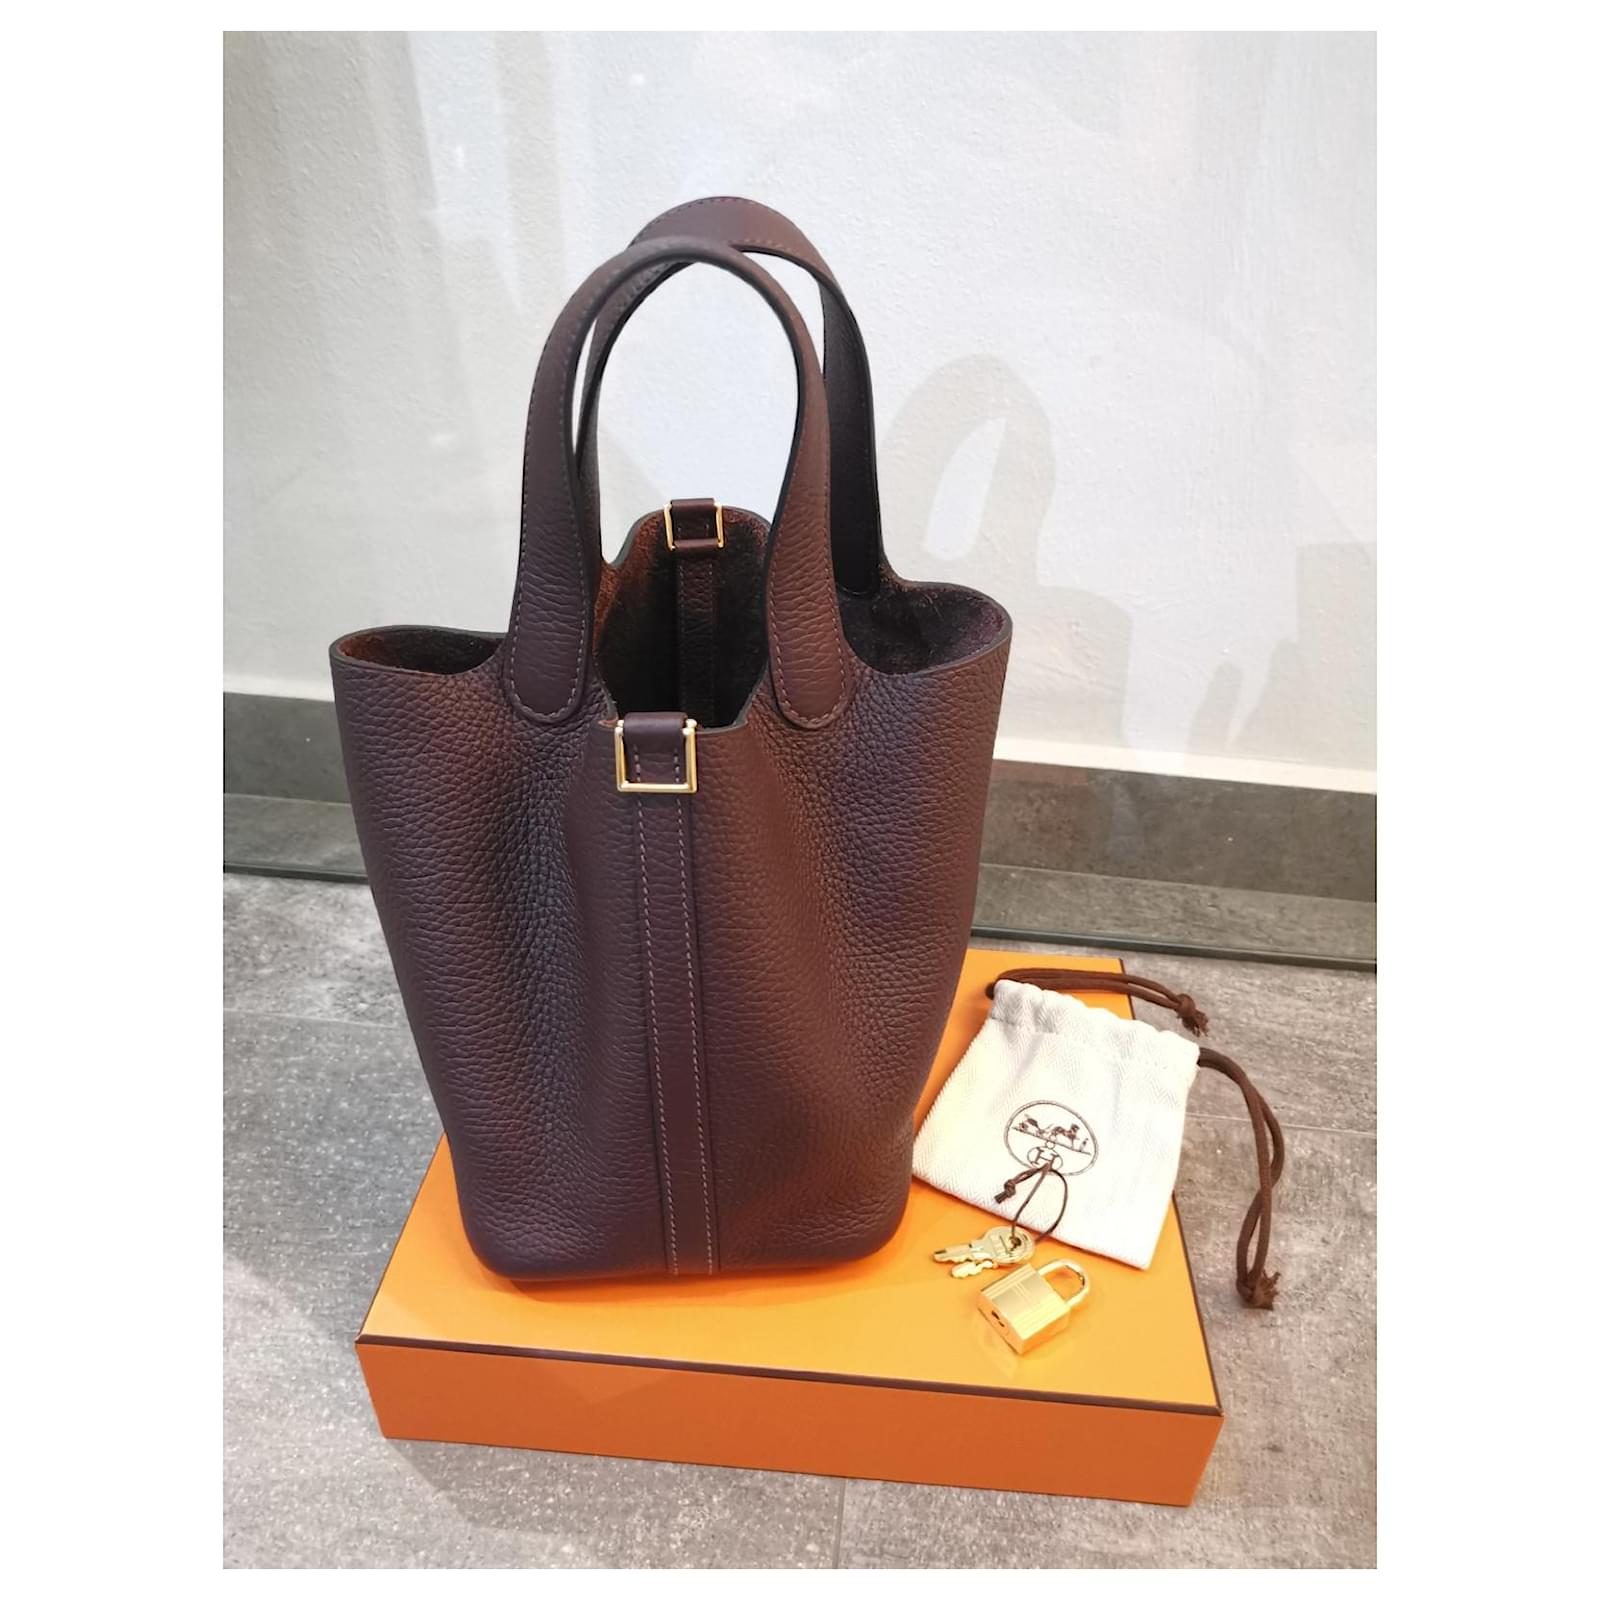 Handbags Hermès Hermès Picotin 18 in Rouge Sellier GHW